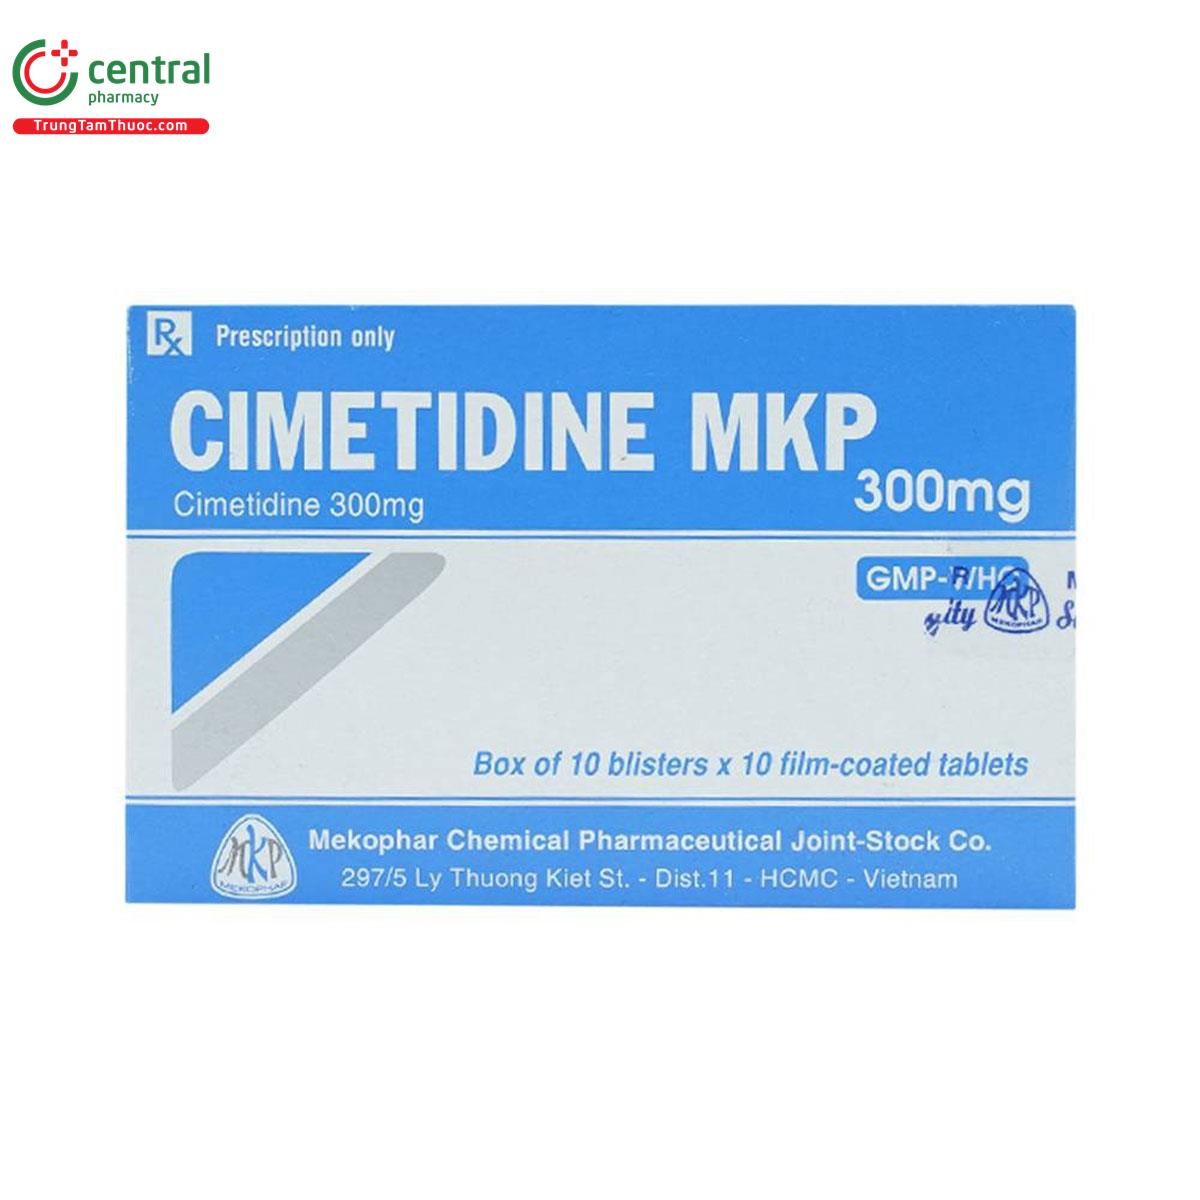 cimetidine mkp 300mg 4 N5850